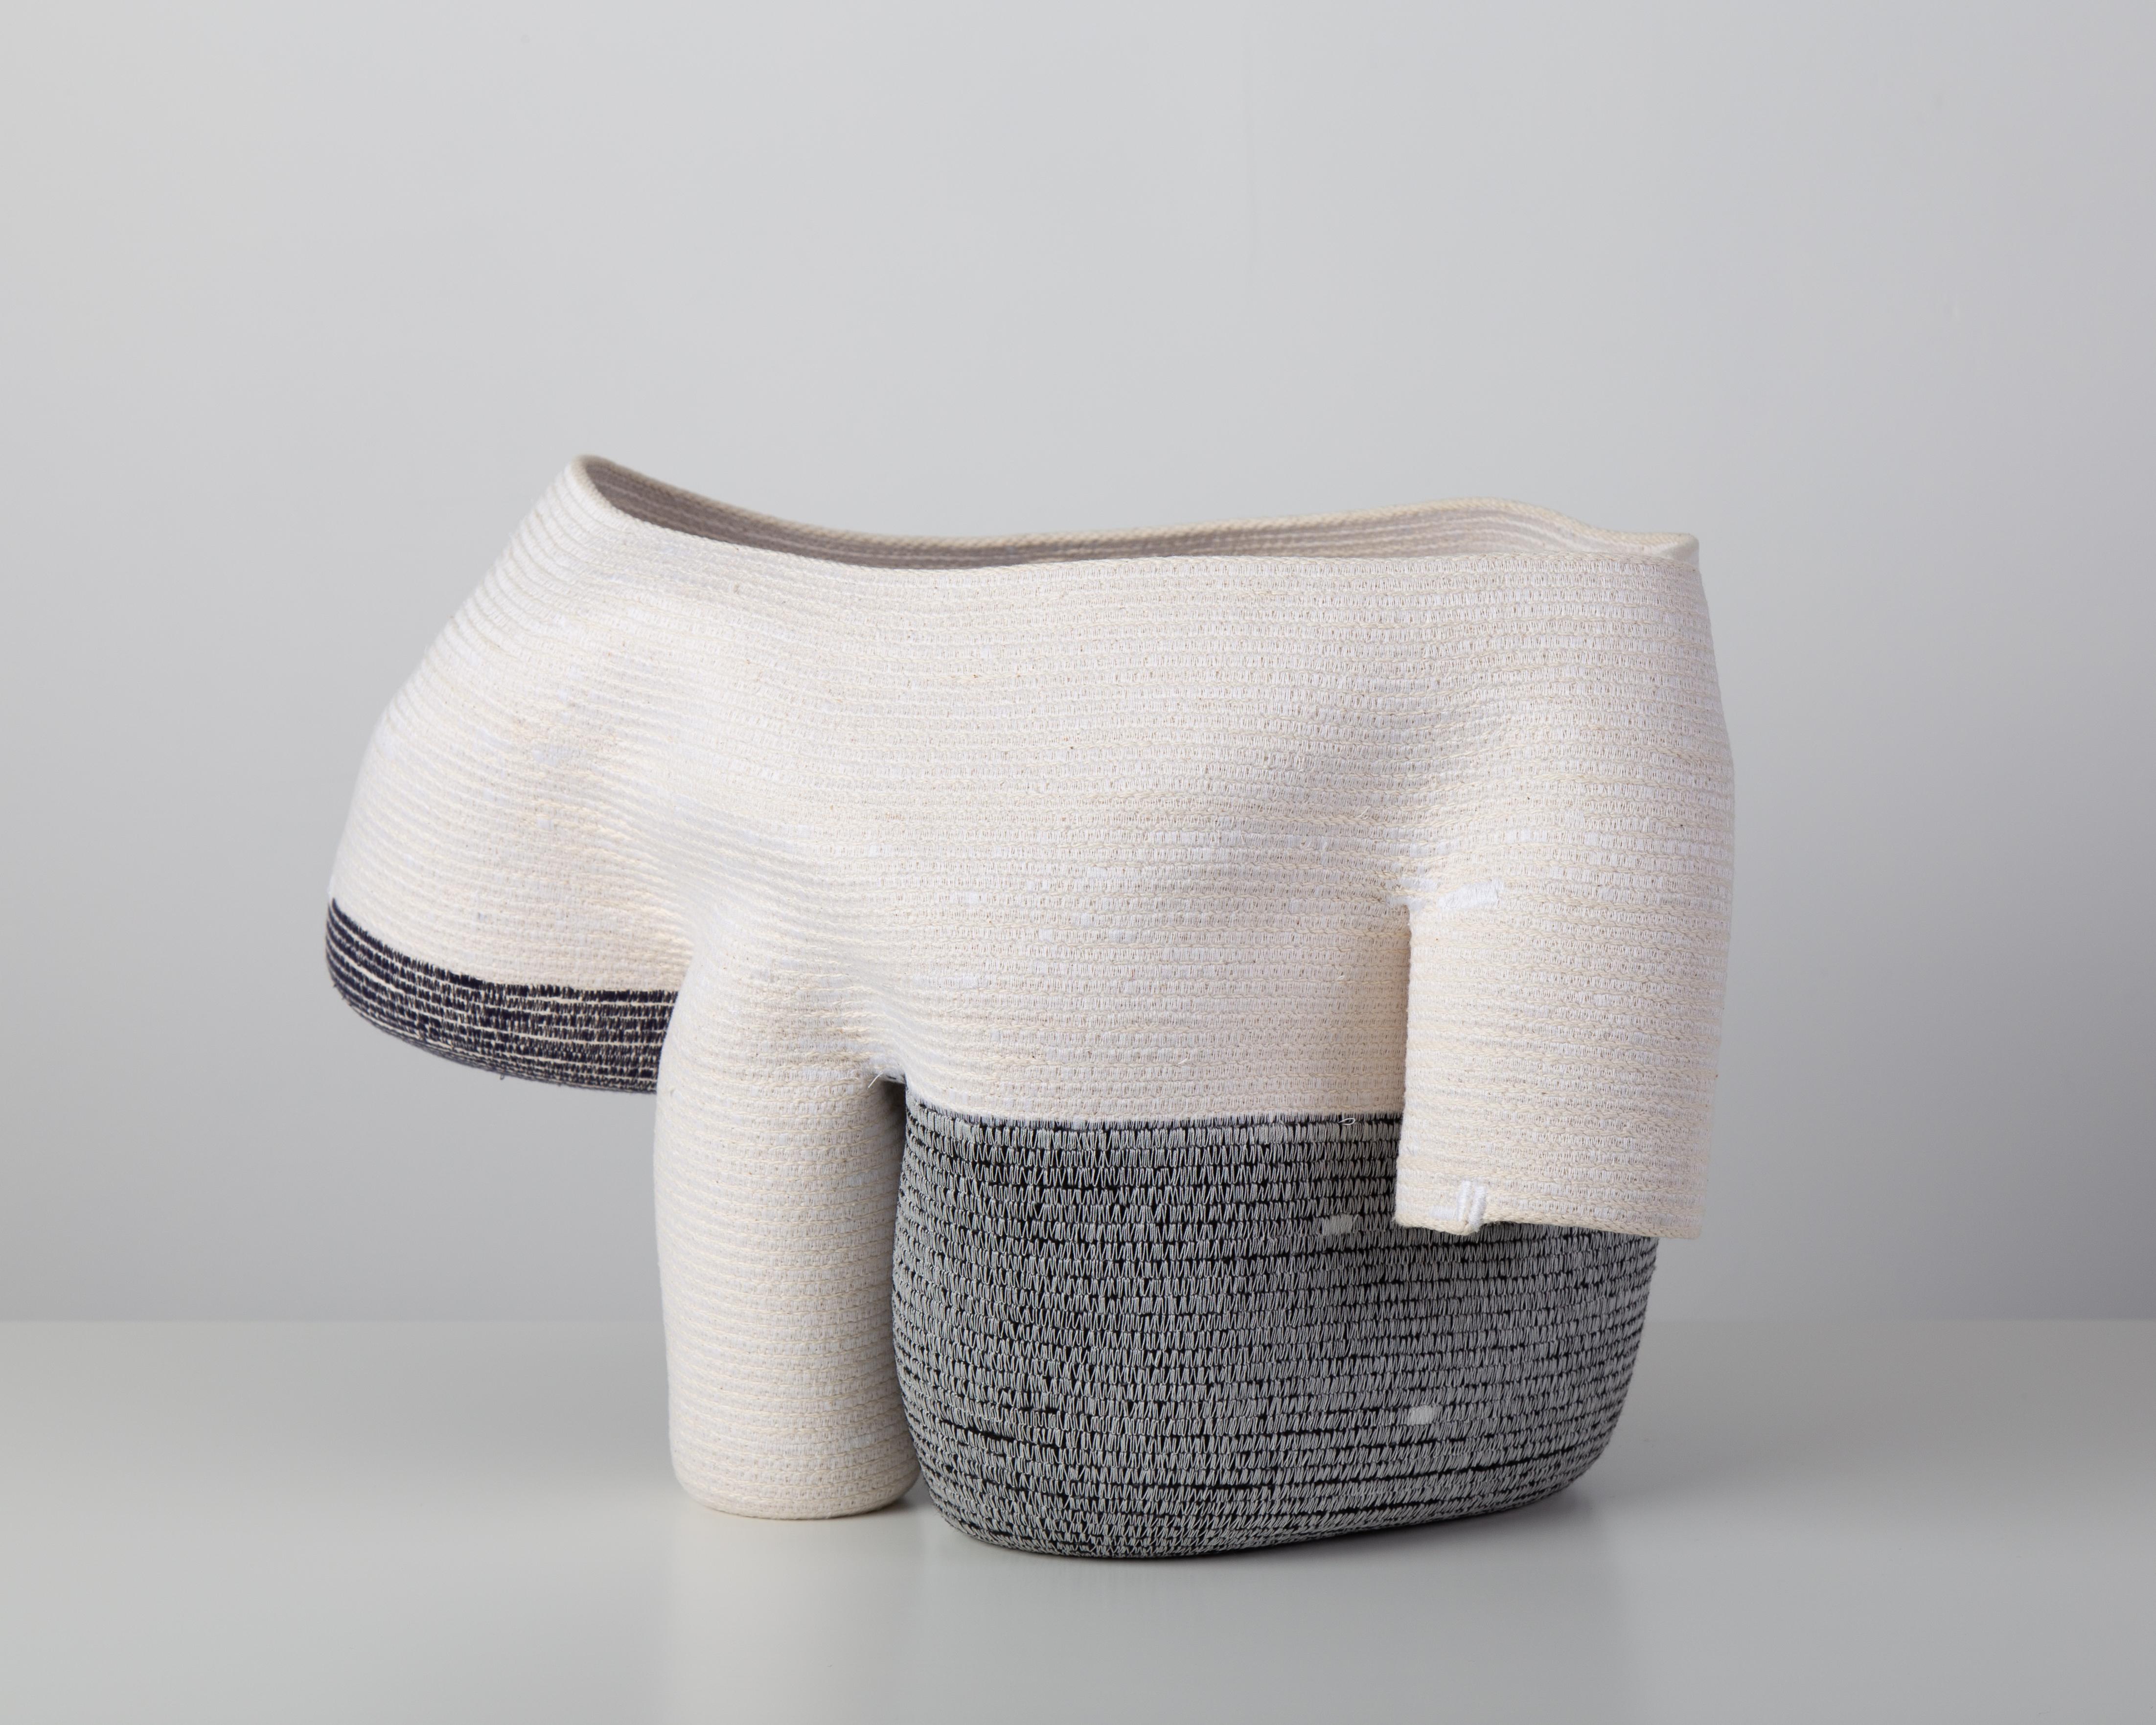 « Vase sans titre de 15 cm » Sculpture en fibre de coton enroulée et cousue de Doug Johnston 2